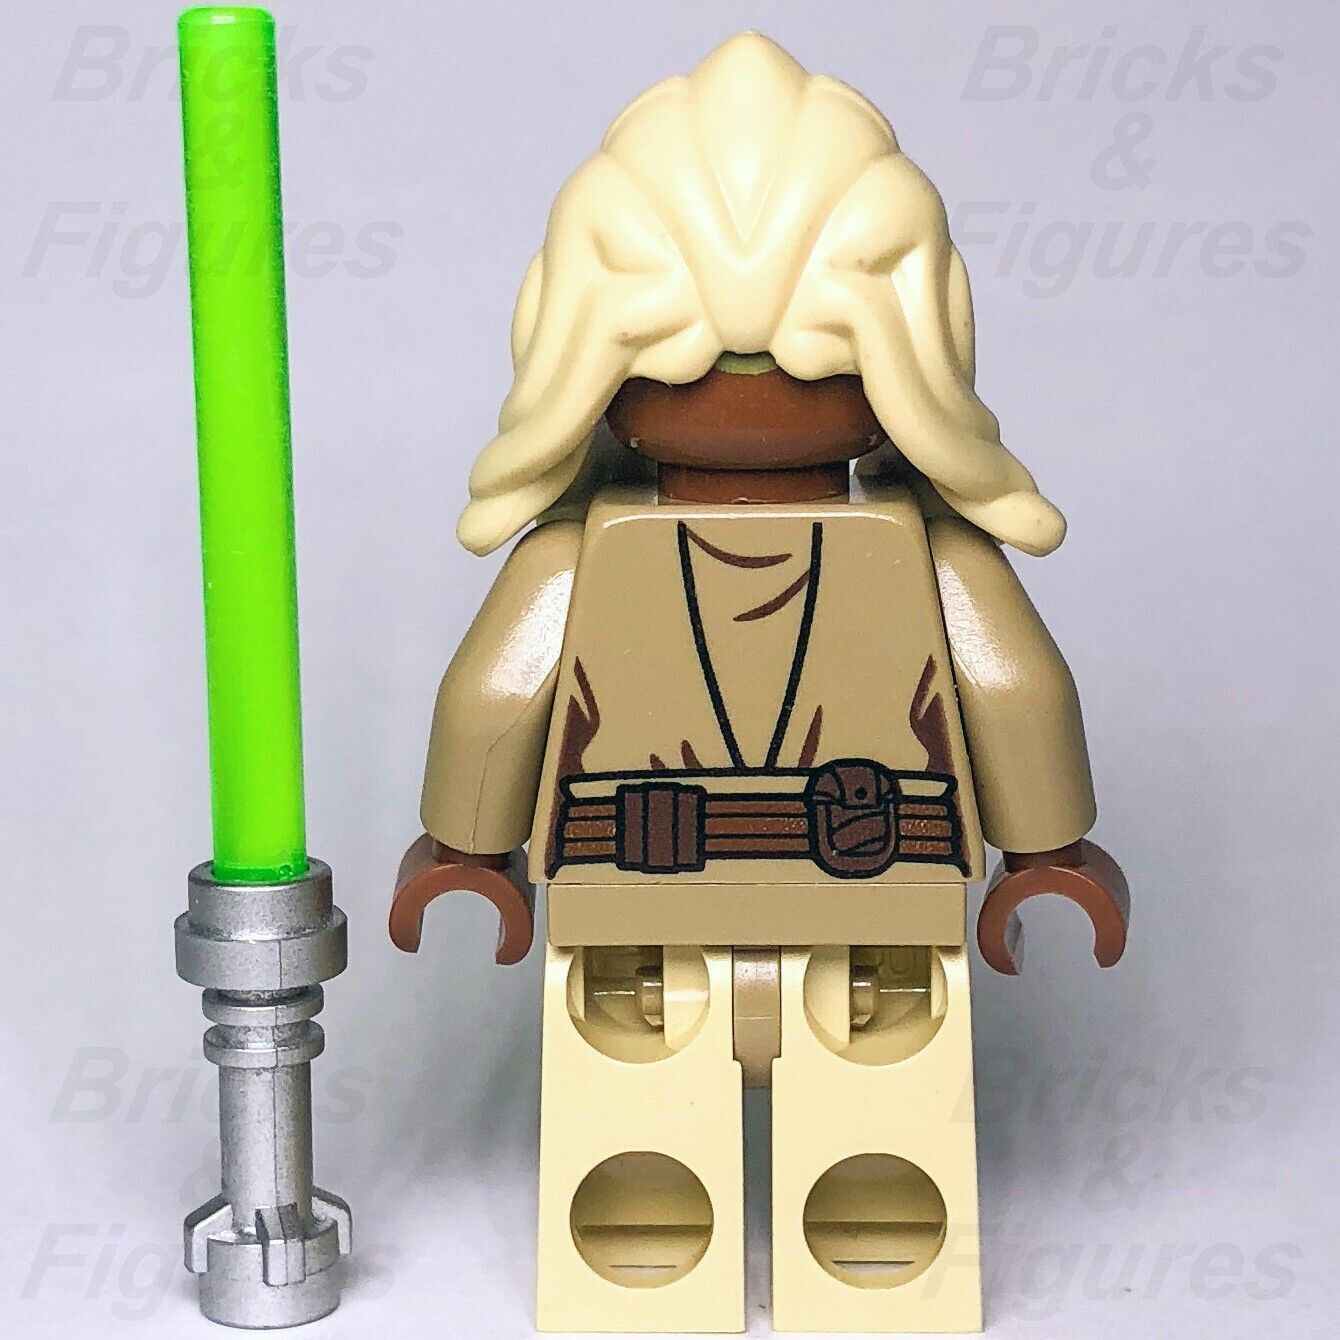 LEGO Star Wars Stass Allie Minifigure Jedi Master Episode 2 75016 sw0469